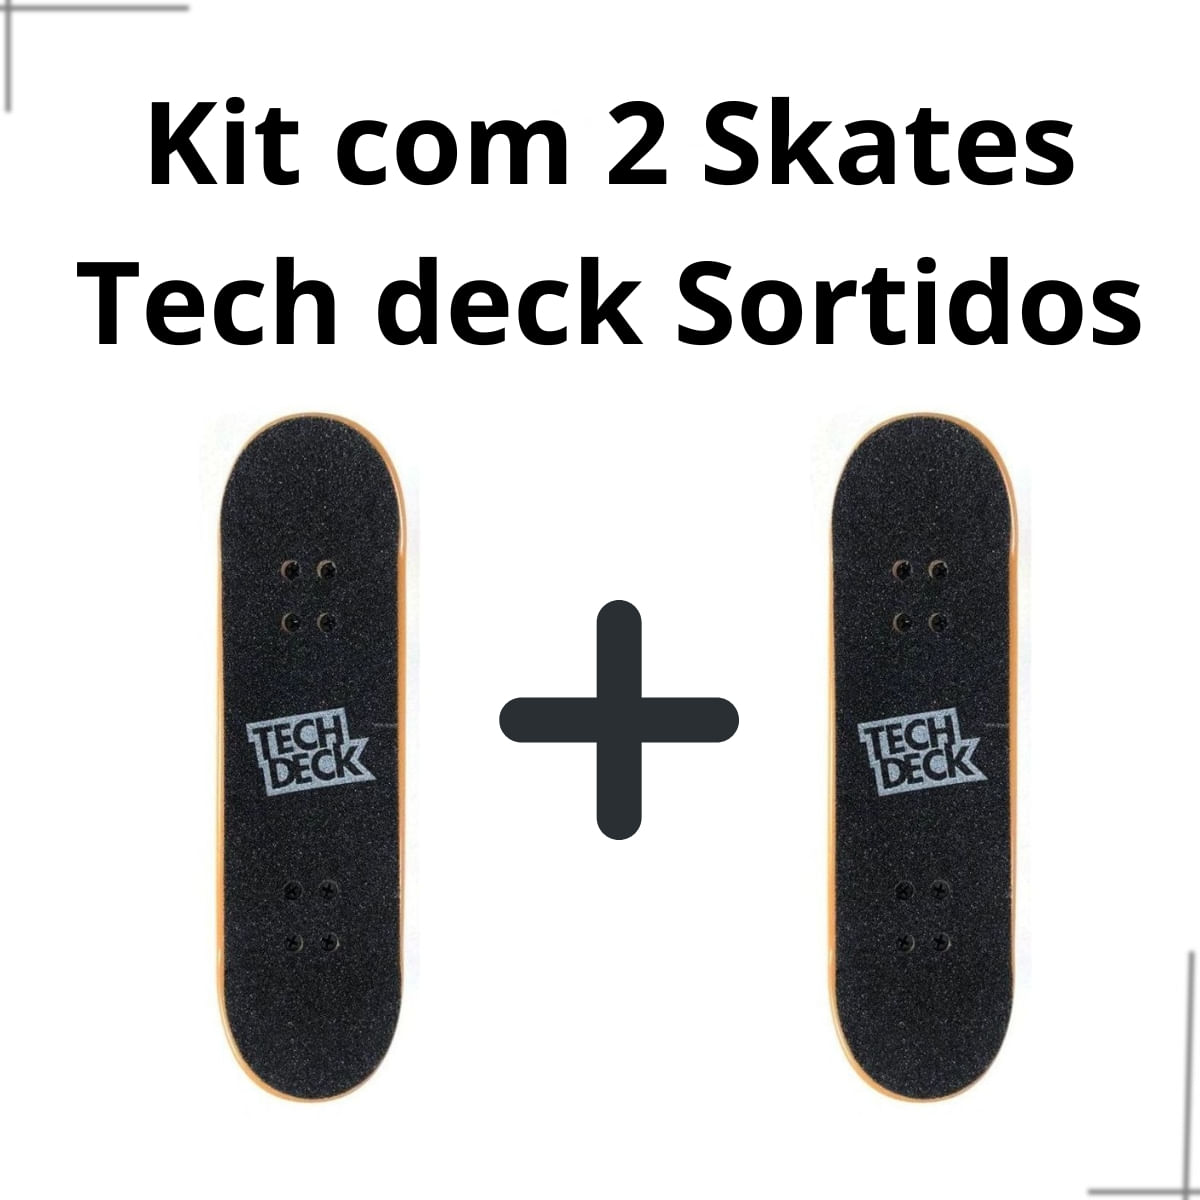 Kit Skate De Dedo Tech Deck Disorder - Skate dos Sonhos